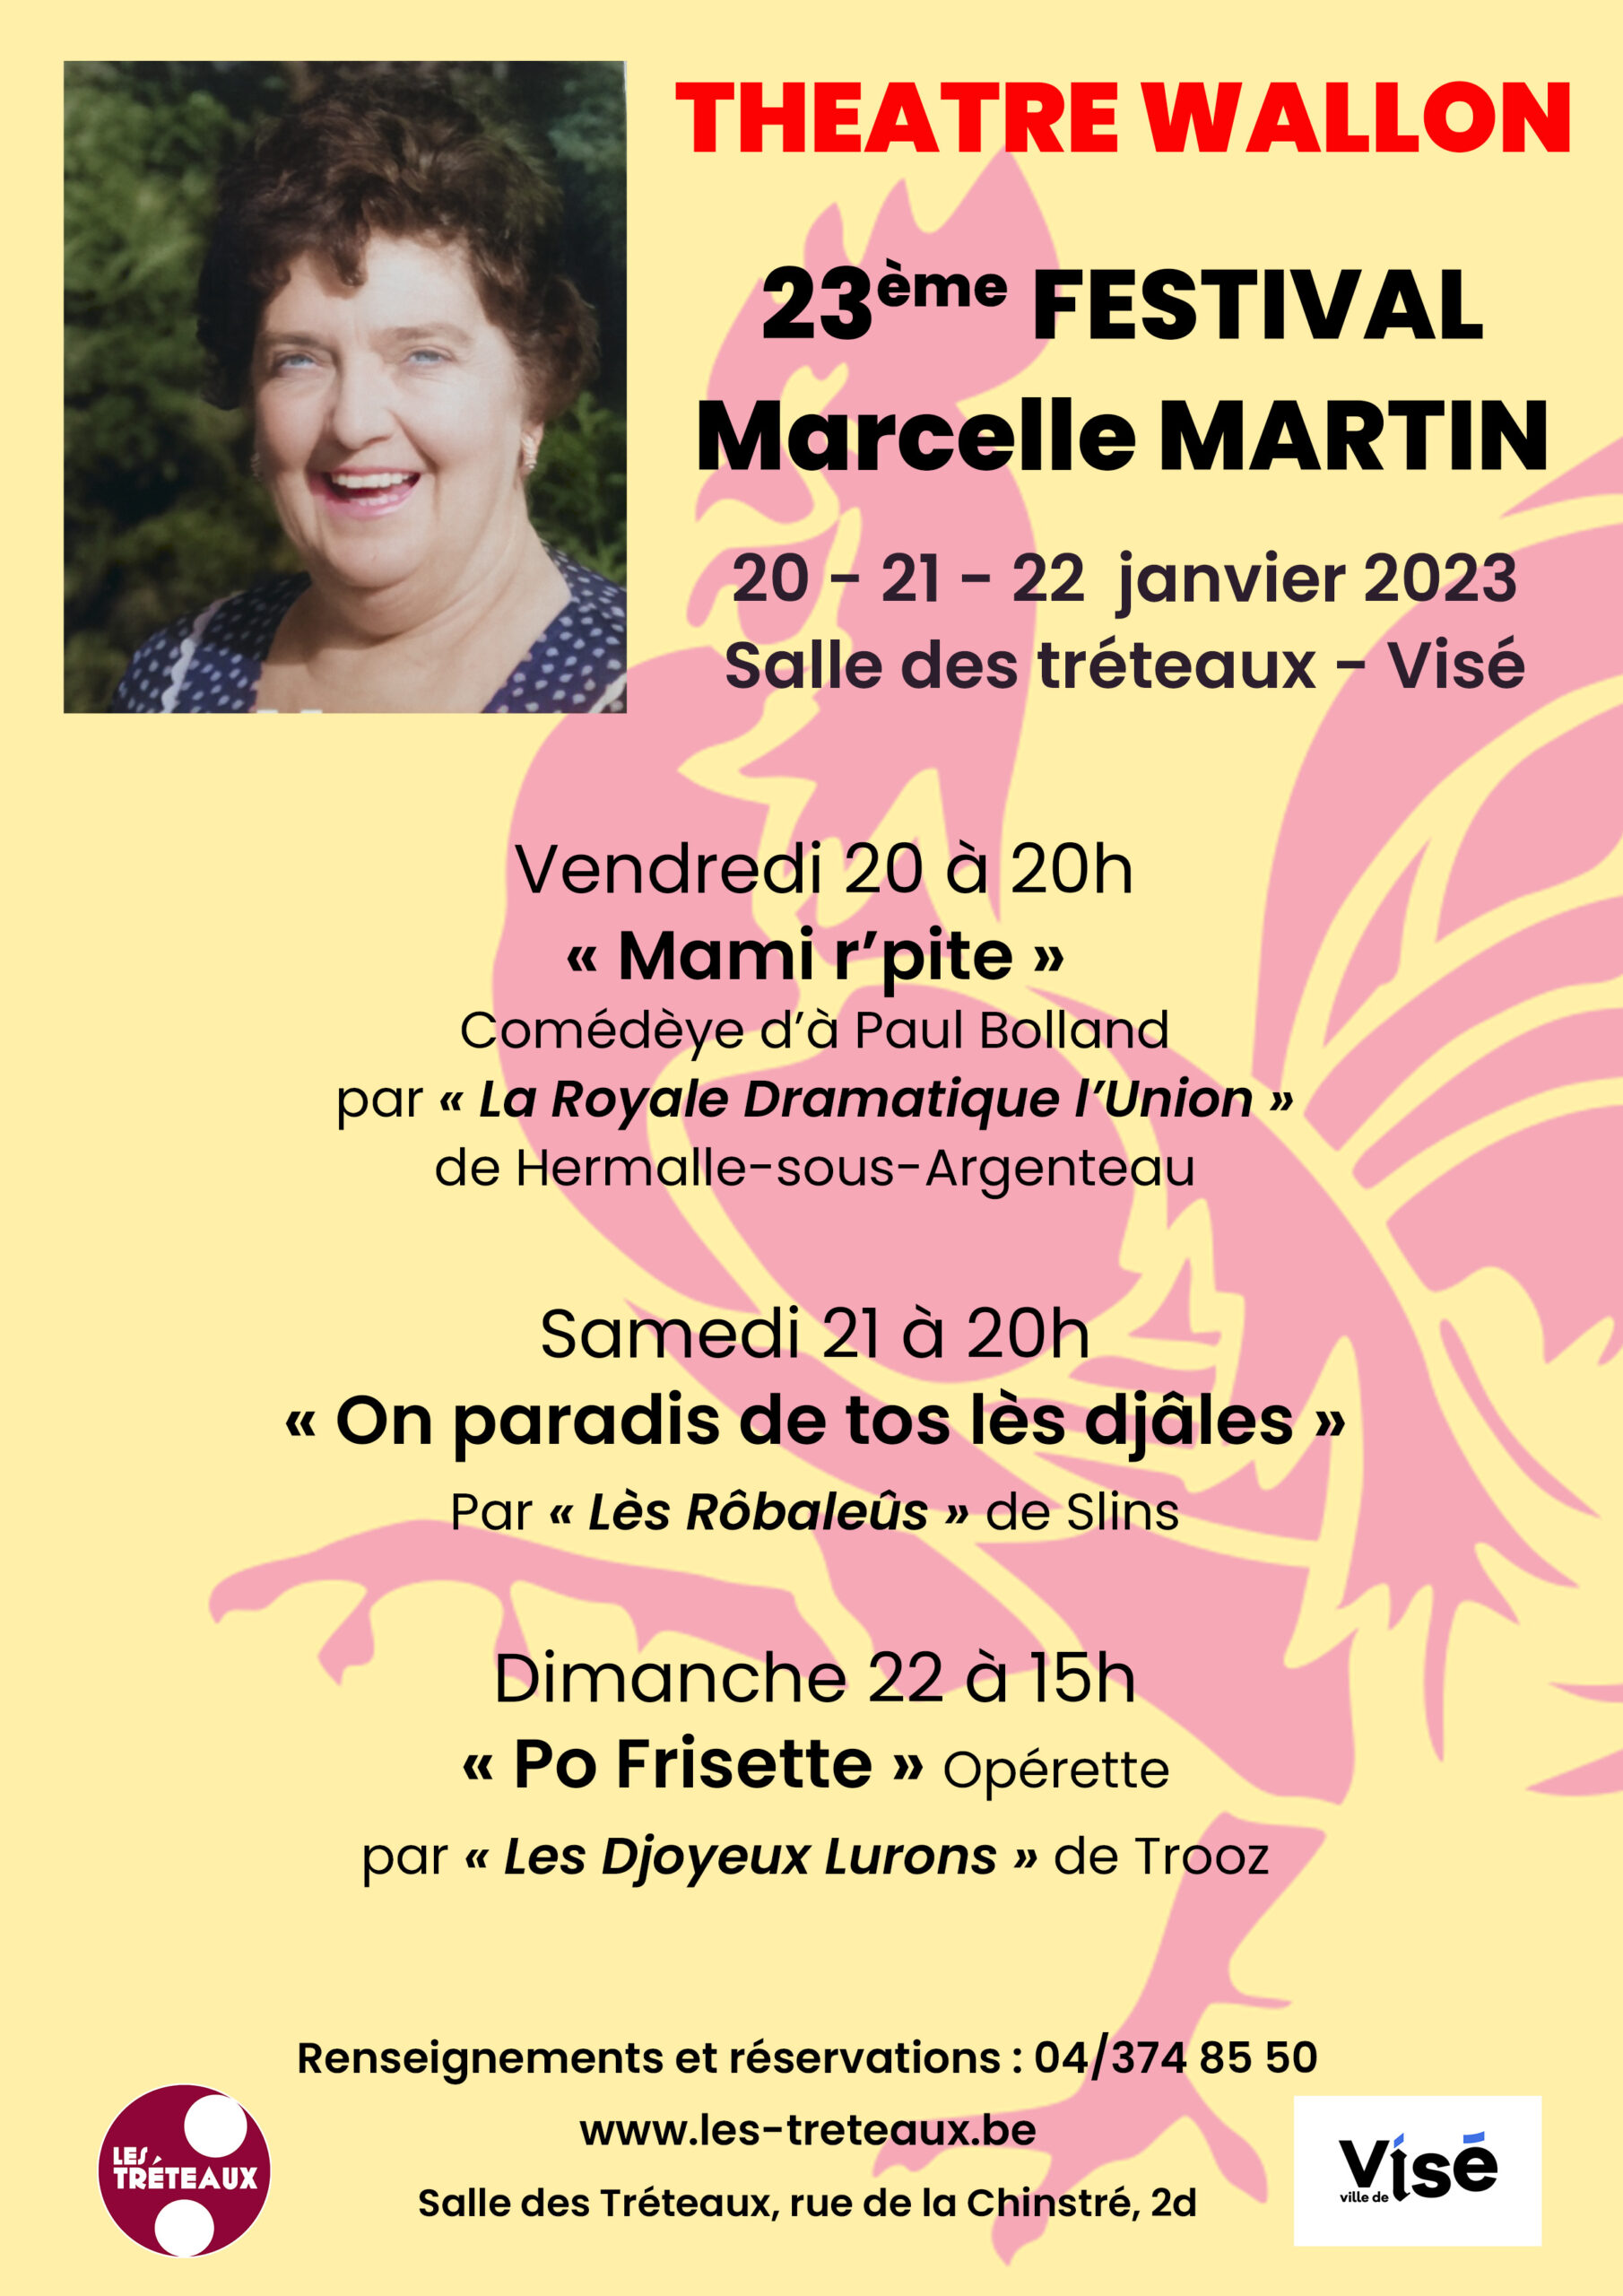 FestivalMarcelle Martin à la Salle Les Tréteaux à VISÉ